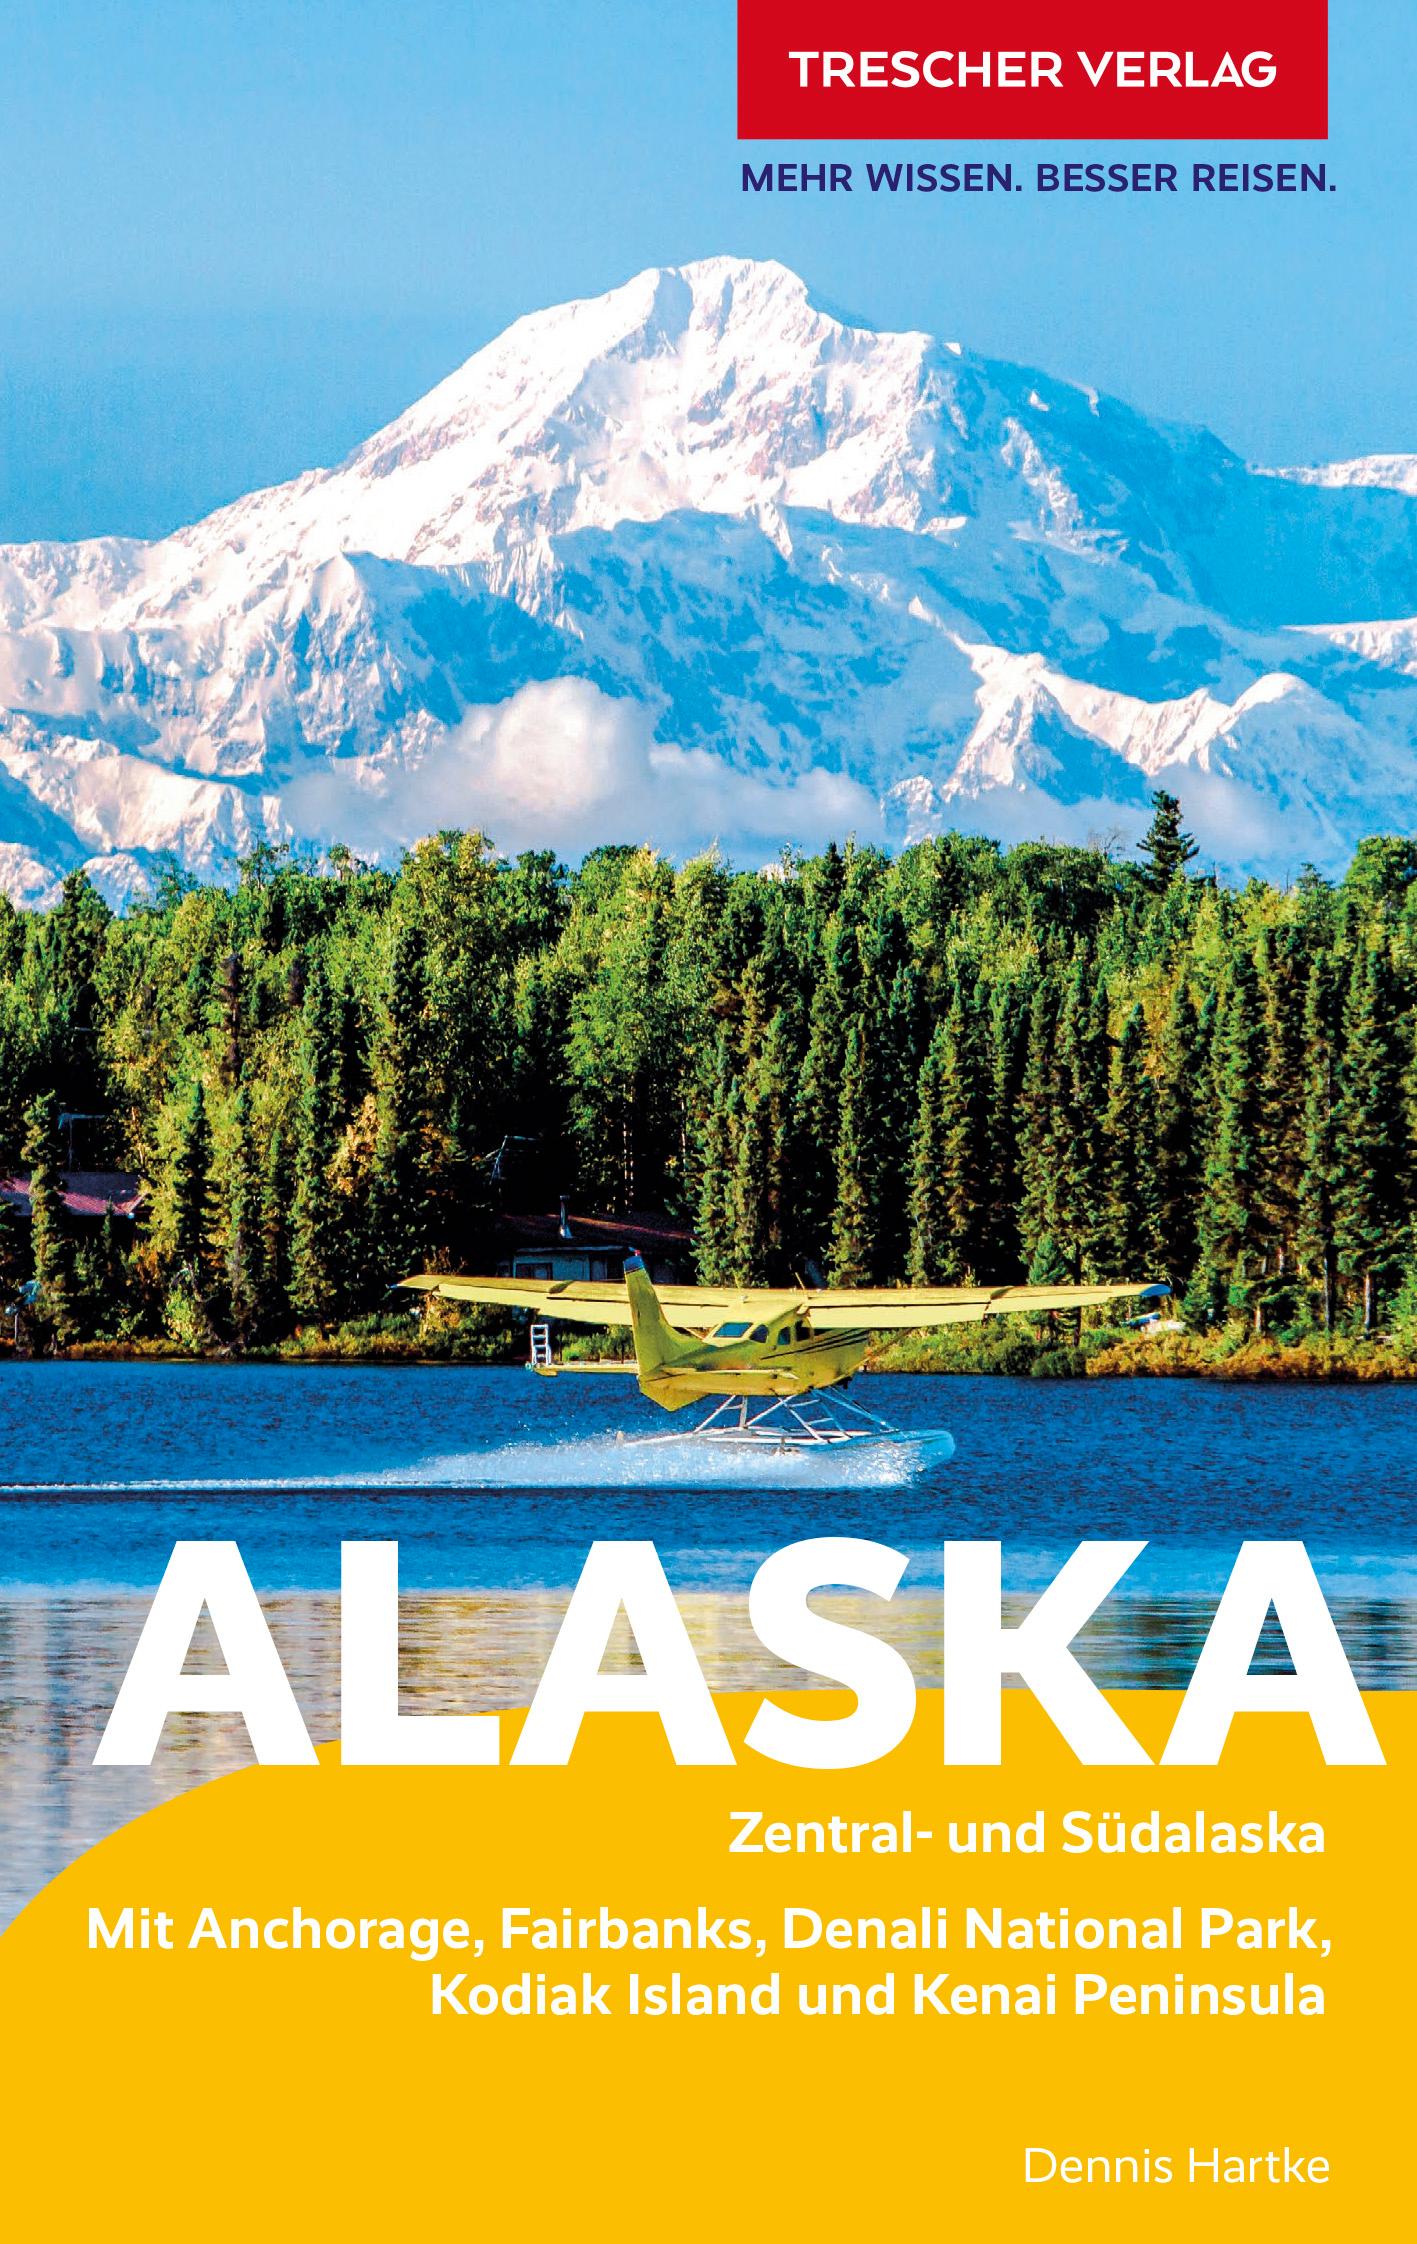 TRESCHER Reiseführer Alaska Zentral- und Südalaska - Mit Anchorage, Fairbanks, Denali-Nationalpark, Kodiak Island und Kenai Peninsula